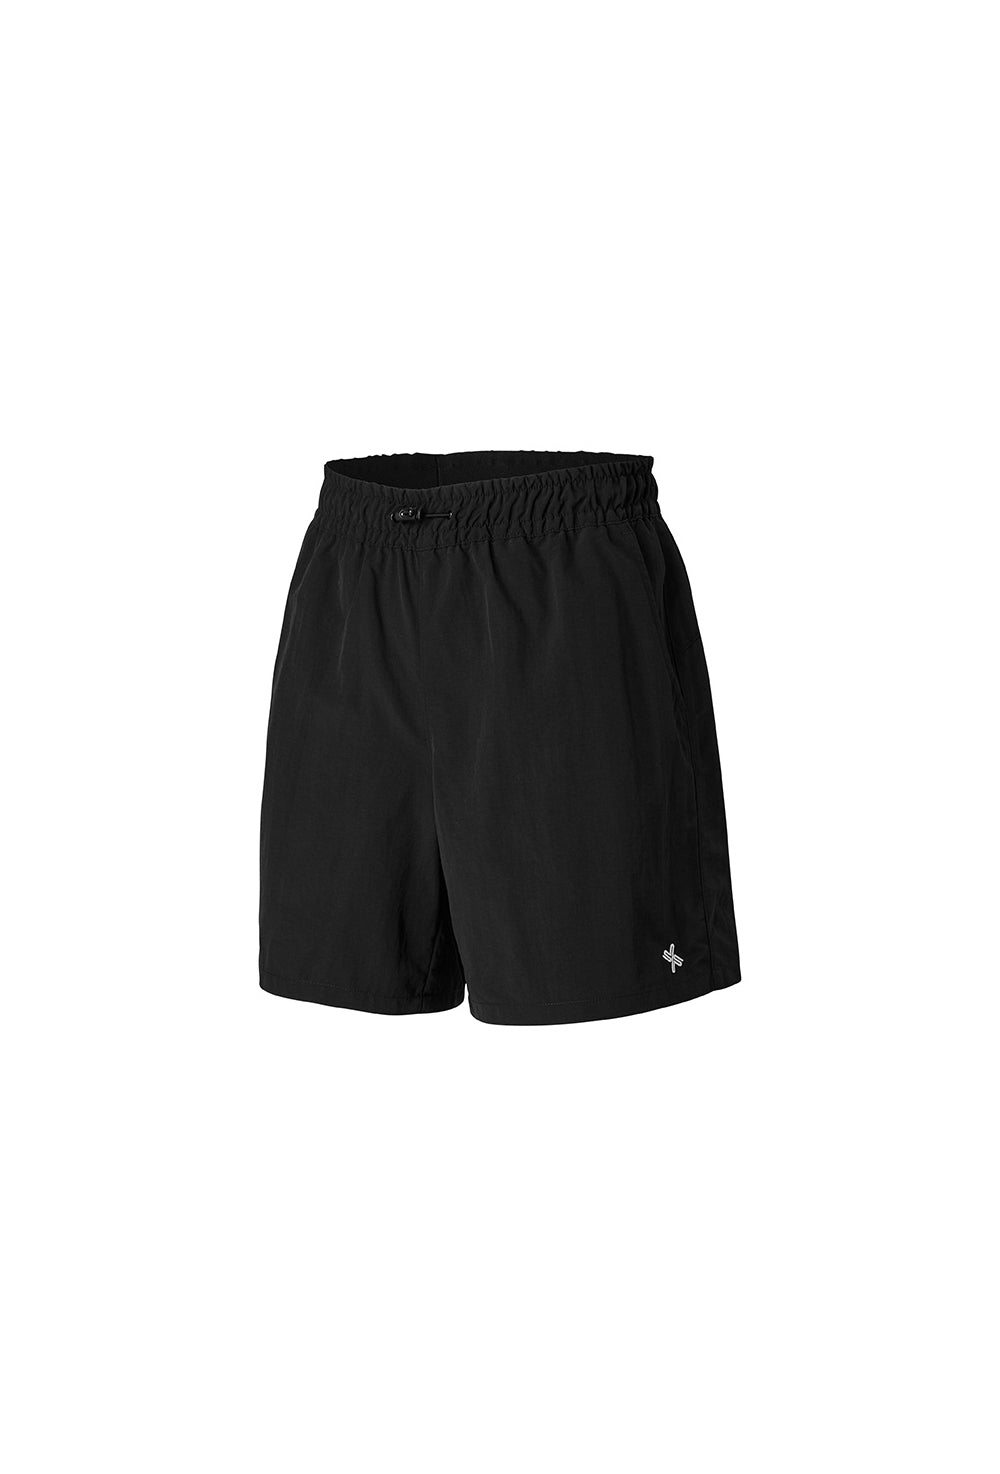 Basic Woven Half Shorts - Black (Clearance)